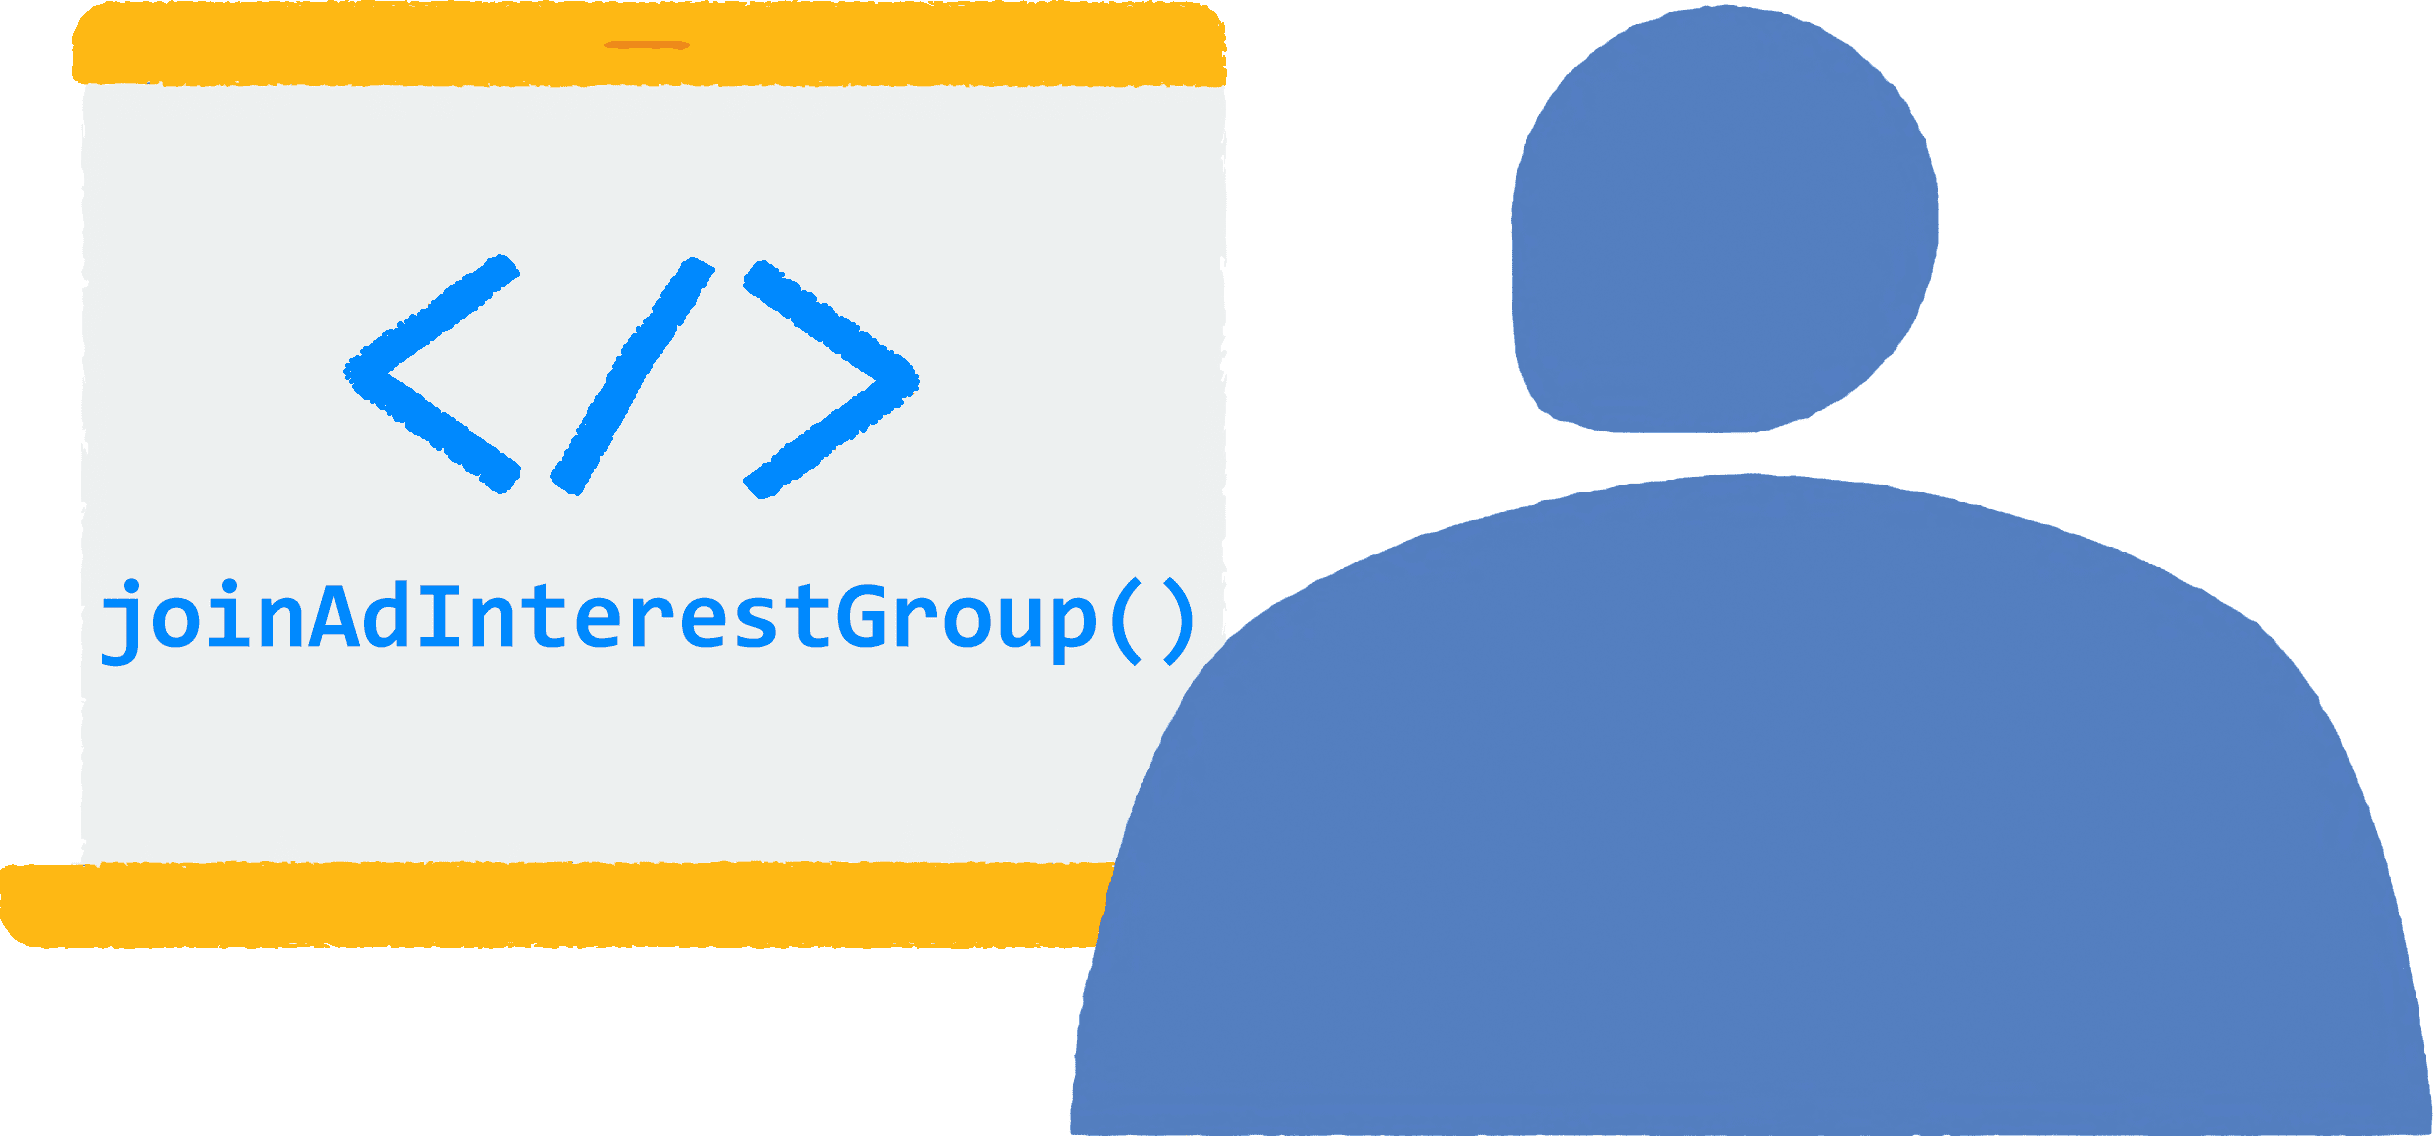 ノートパソコンのブラウザでサイトを閲覧している人のイラスト。ブラウザで JavaScript コードの JoinAdInterestGroup() が実行されている。